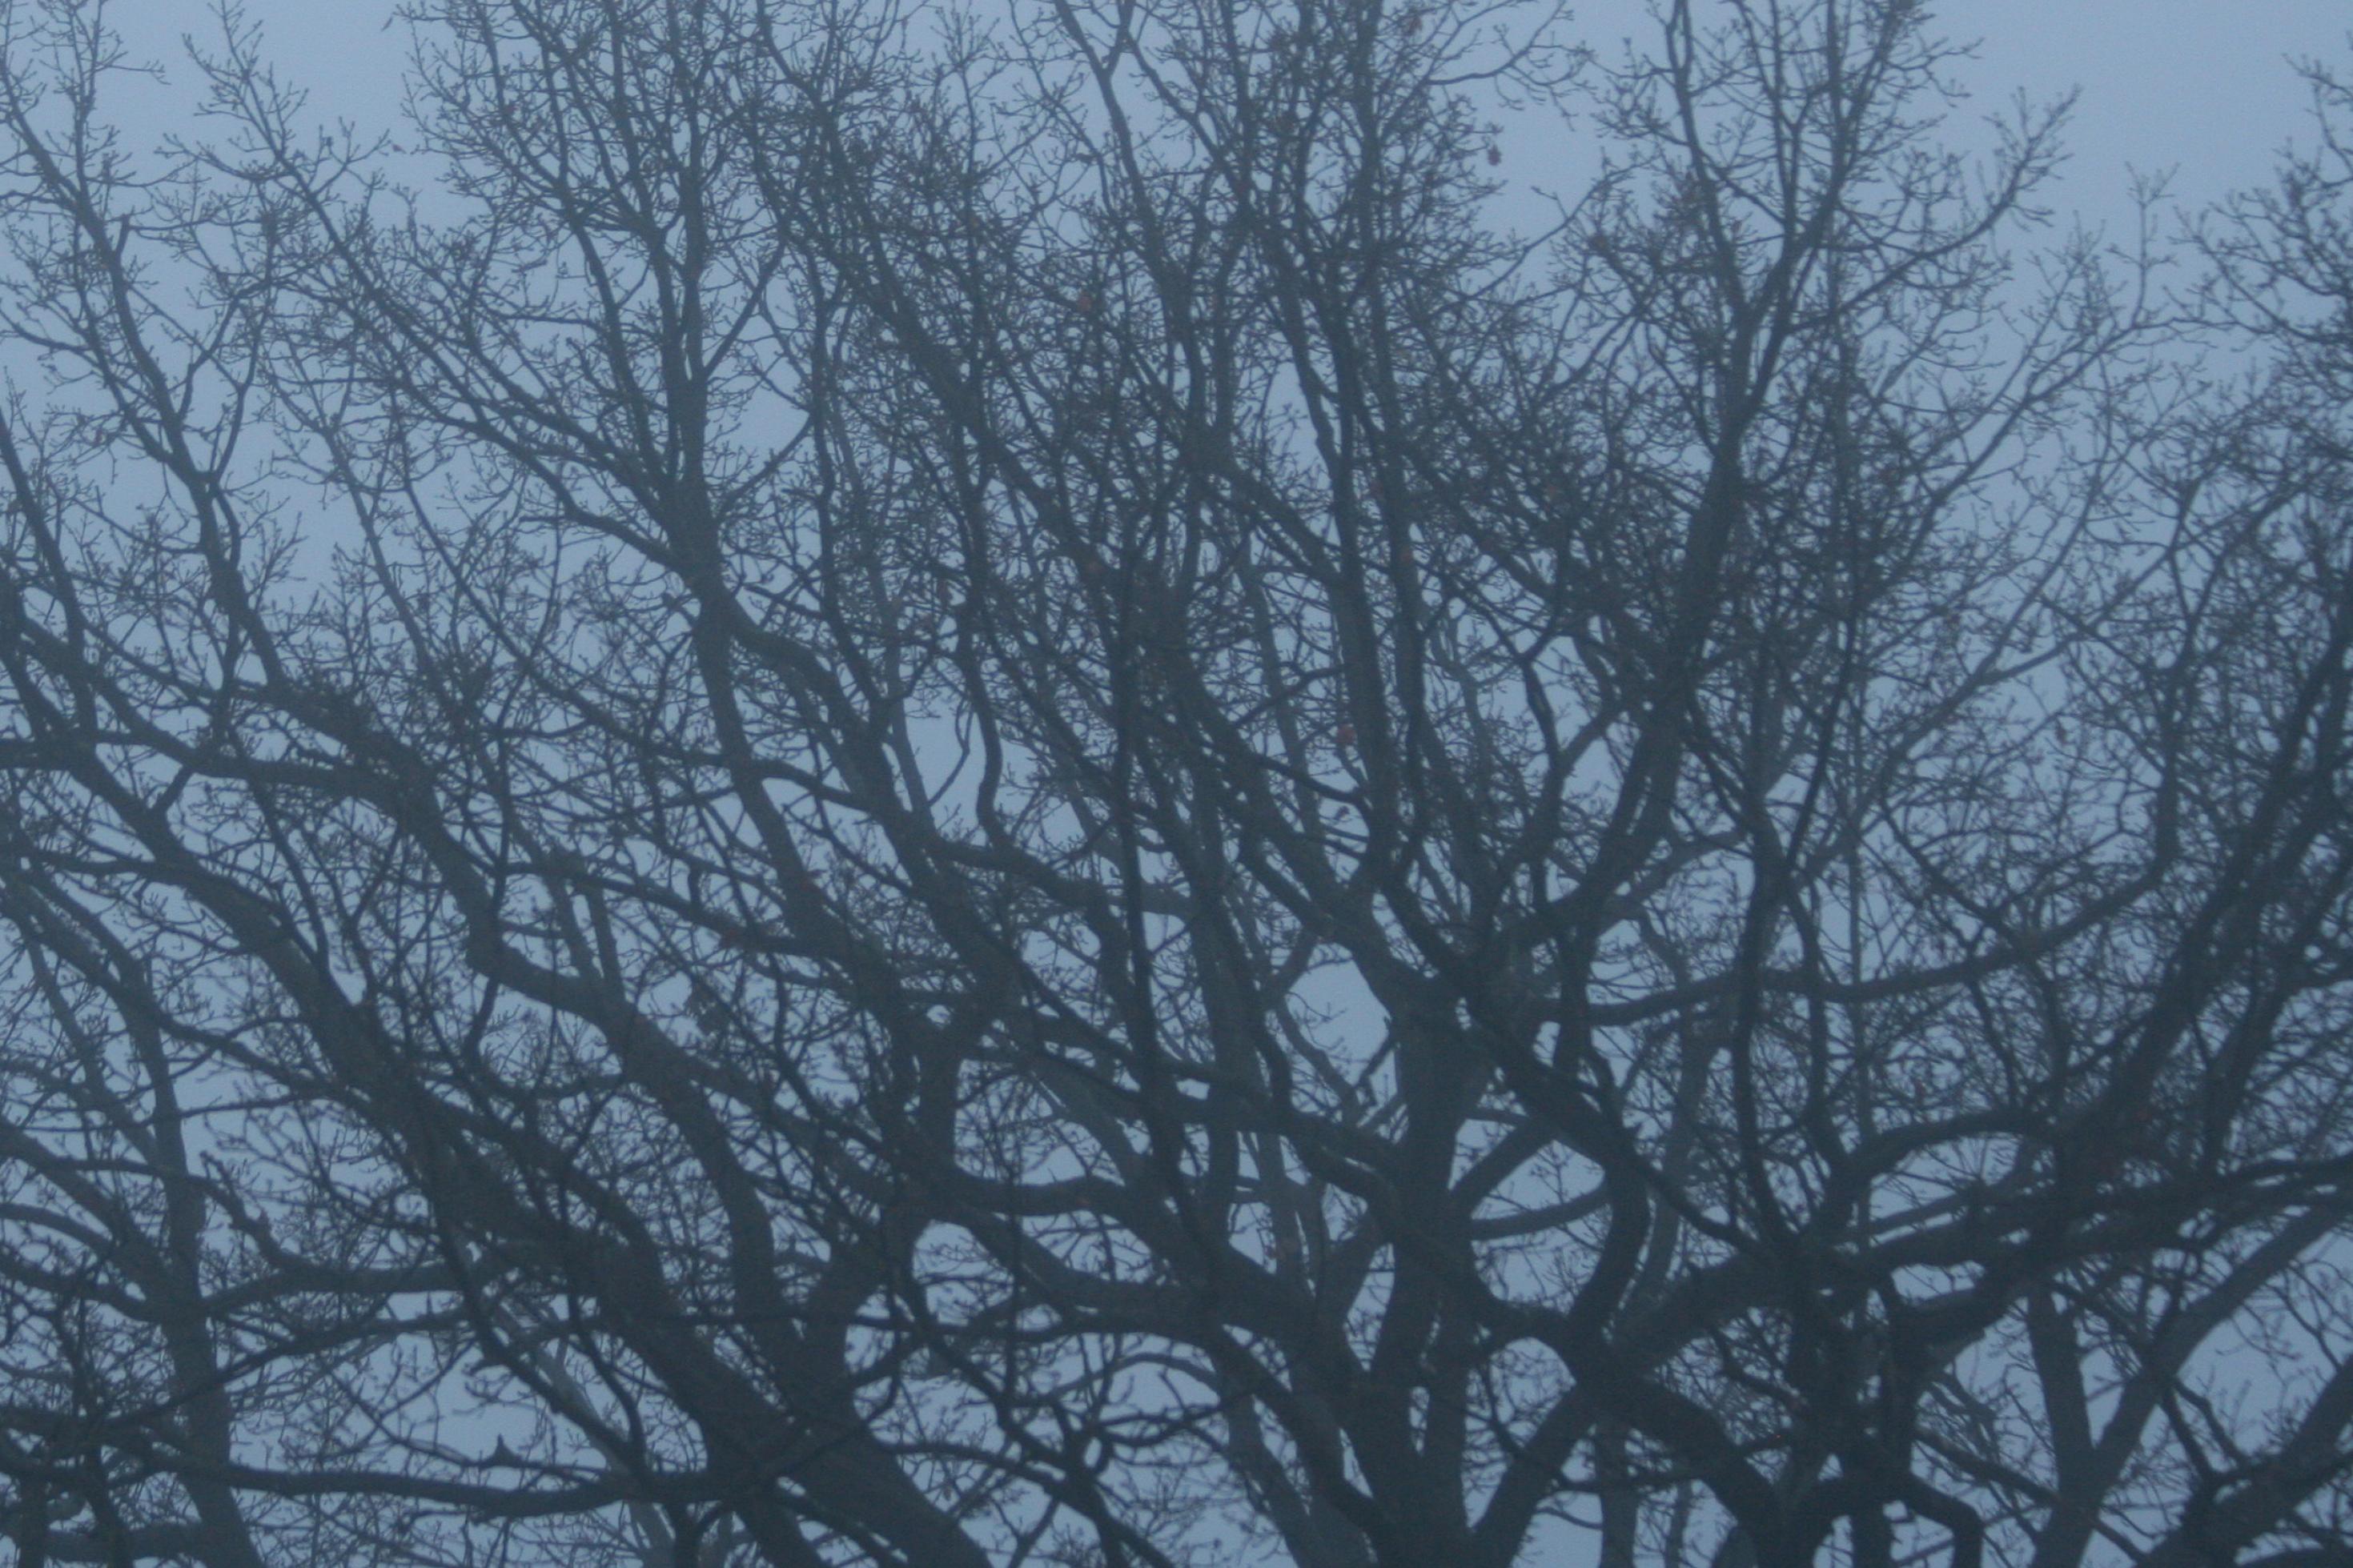 Zu sehen ist die im Nebel unscharfe, ausladende Krone eines Laubbaumes, der im Winter keine Blätter trägt. Lange Zeit galten Bäume als Symbole für die menschliche Abstammung, doch heute wissen die Forscher, dass die Evolution wohl eher einem Flussdelta ähnelt, bei dem sich Arme verzweigen, aber auch wieder vereinigen.